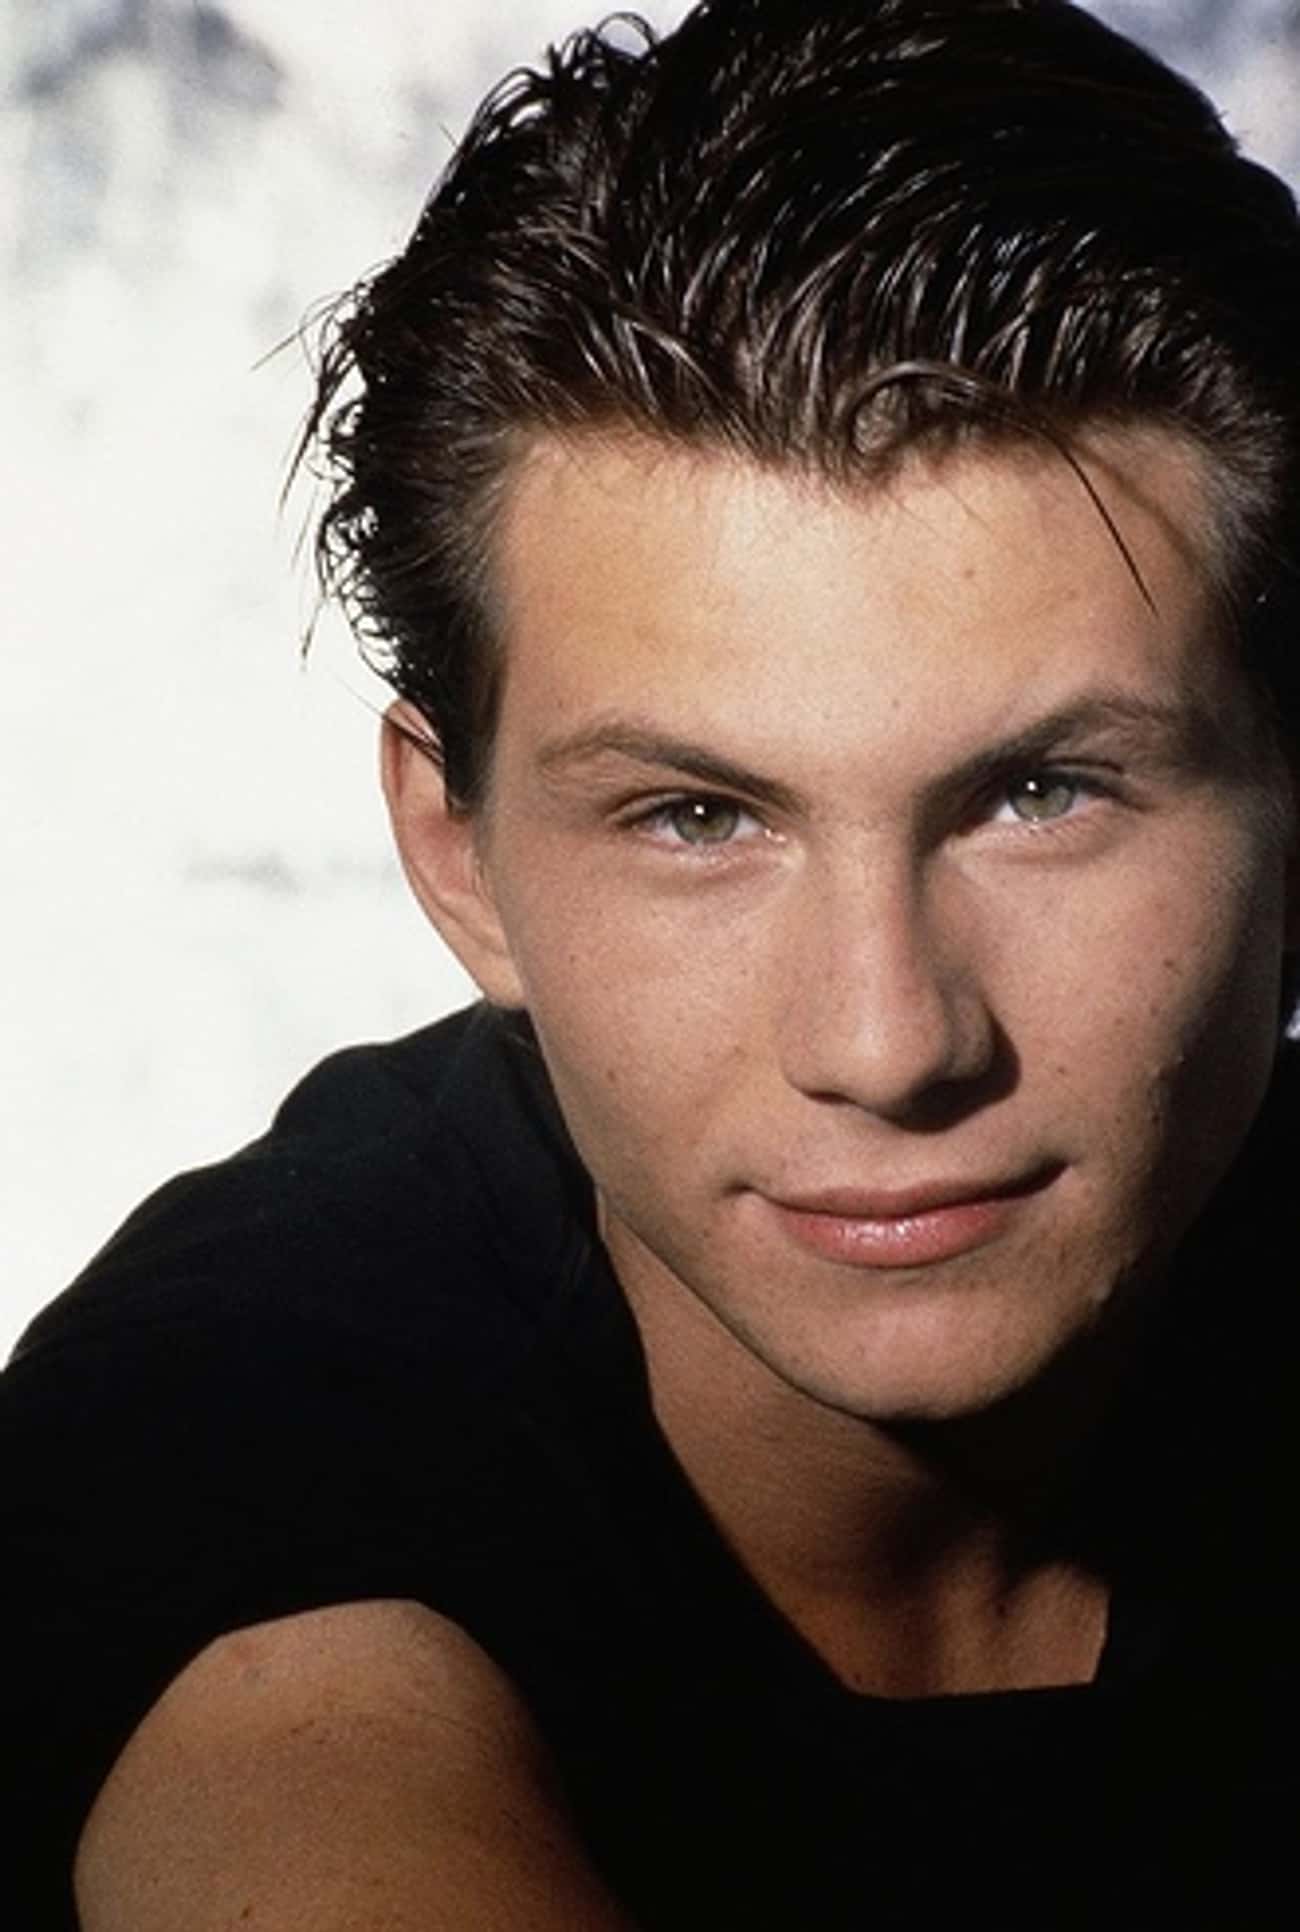 Young Christian Slater in Black T-Shirt Closeup Headshot